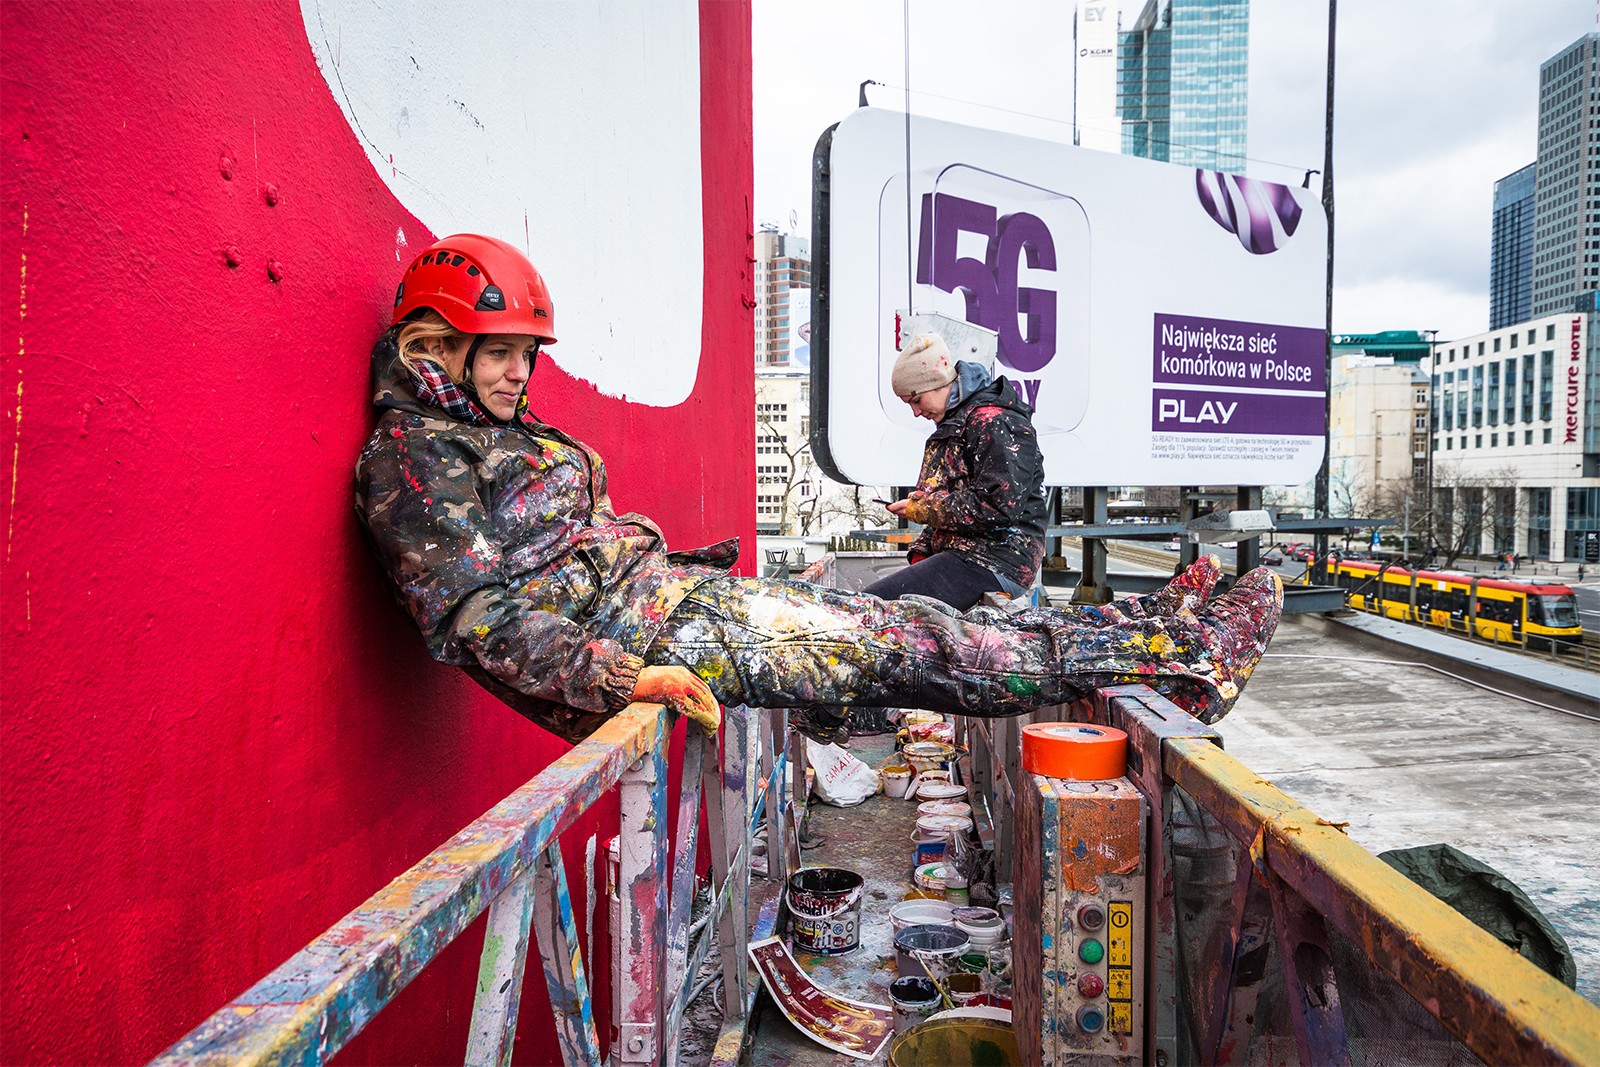 Artyści malują mural dla marki Heinz w centrum Warszawy | 150 lat marki Heinz | Portfolio